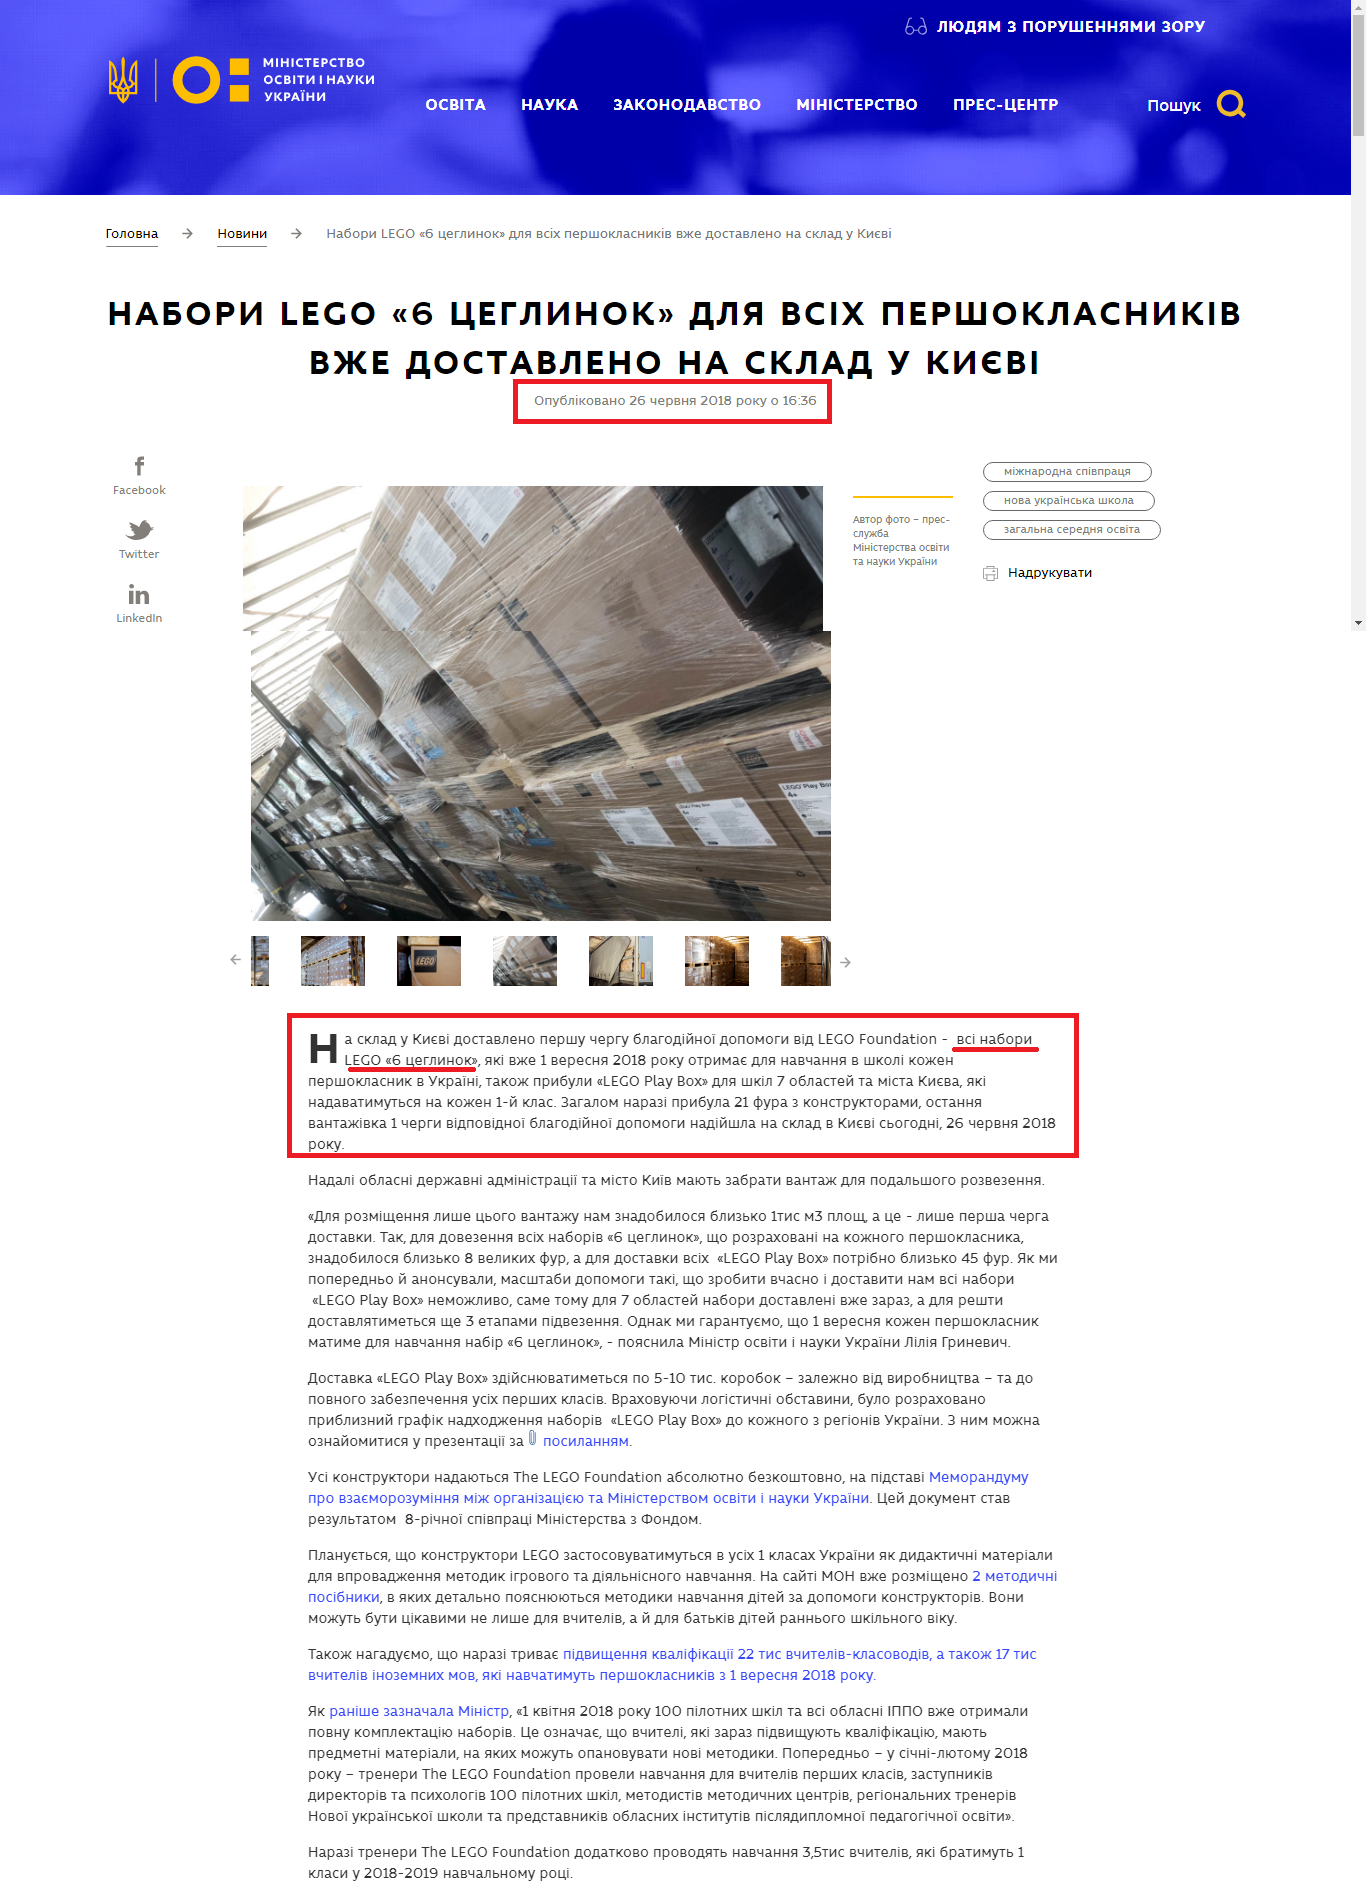 https://mon.gov.ua/ua/news/nabori-lego-6-ceglinok-dlya-vsih-pershoklasnikiv-vzhe-dostavleno-na-sklad-v-kiyevi